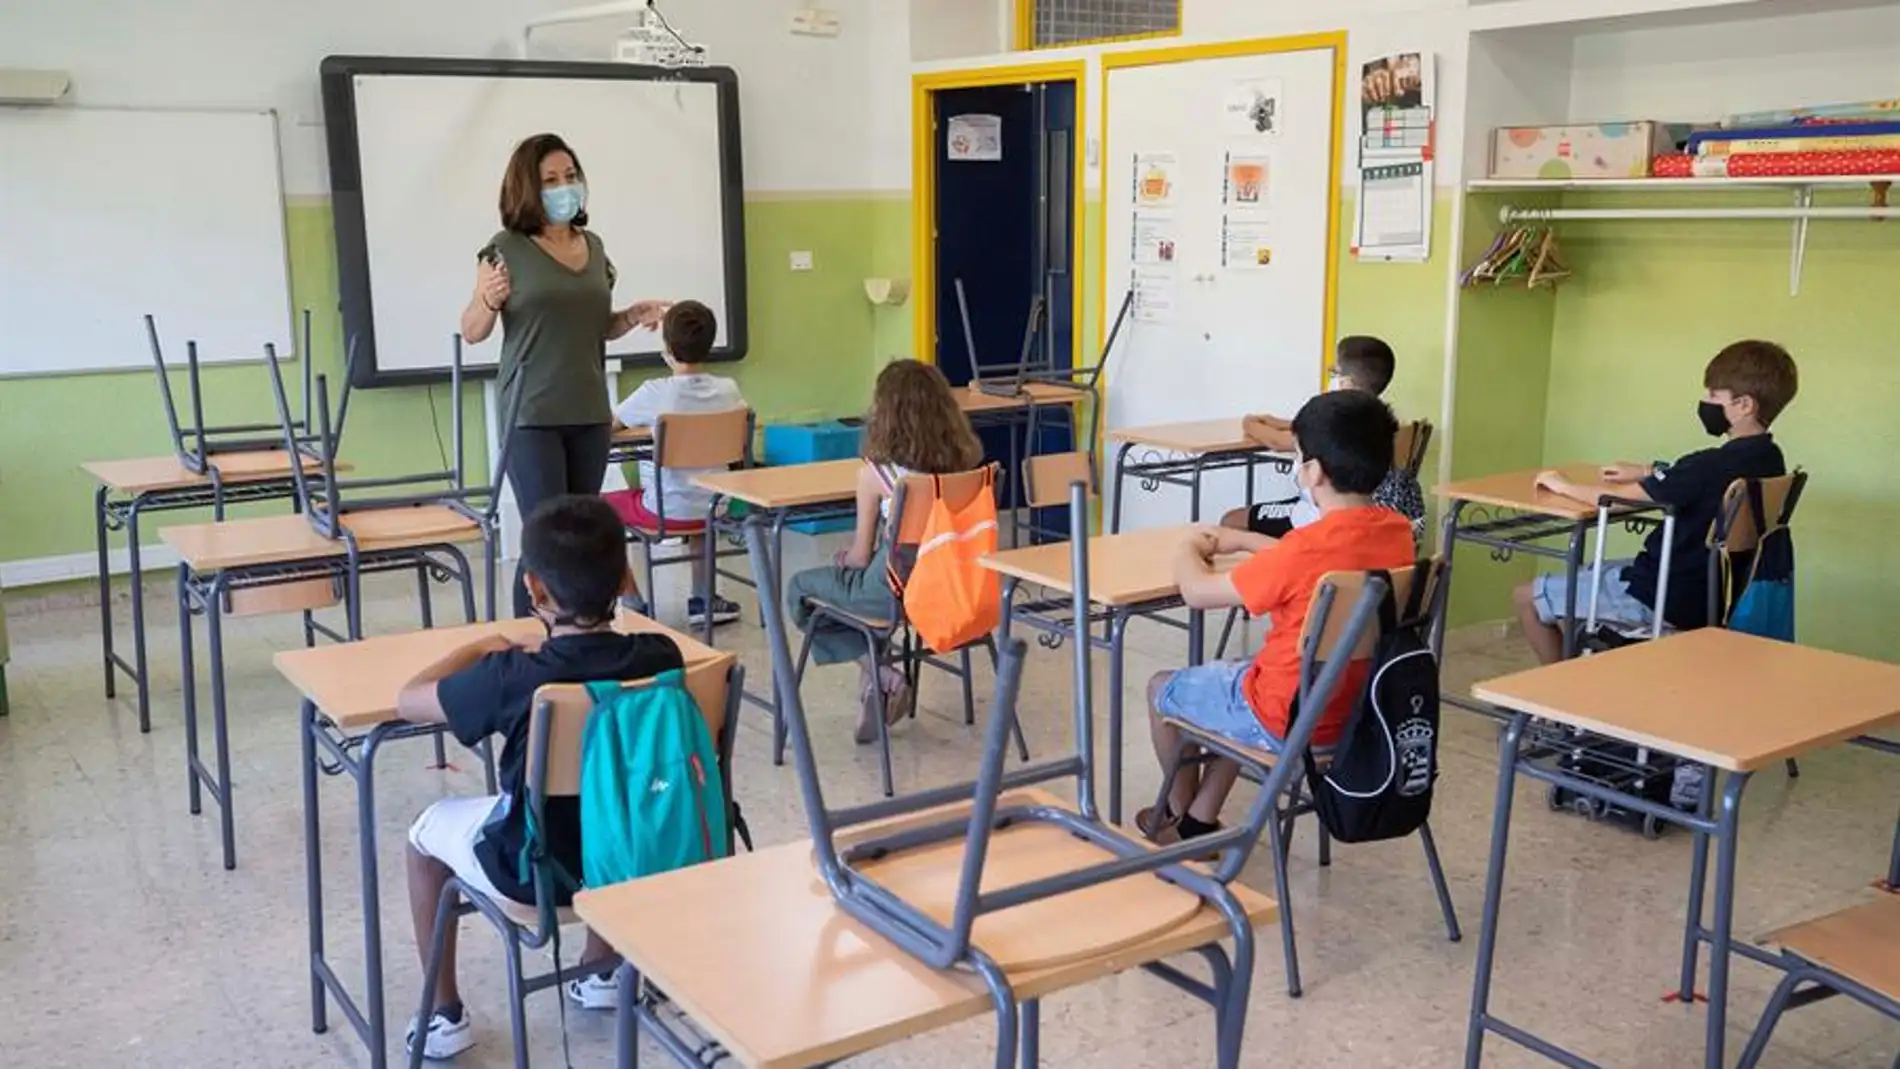 Calendario escolar Madrid 2021 - 2022: cuándo empiezan las clases y fechas clave